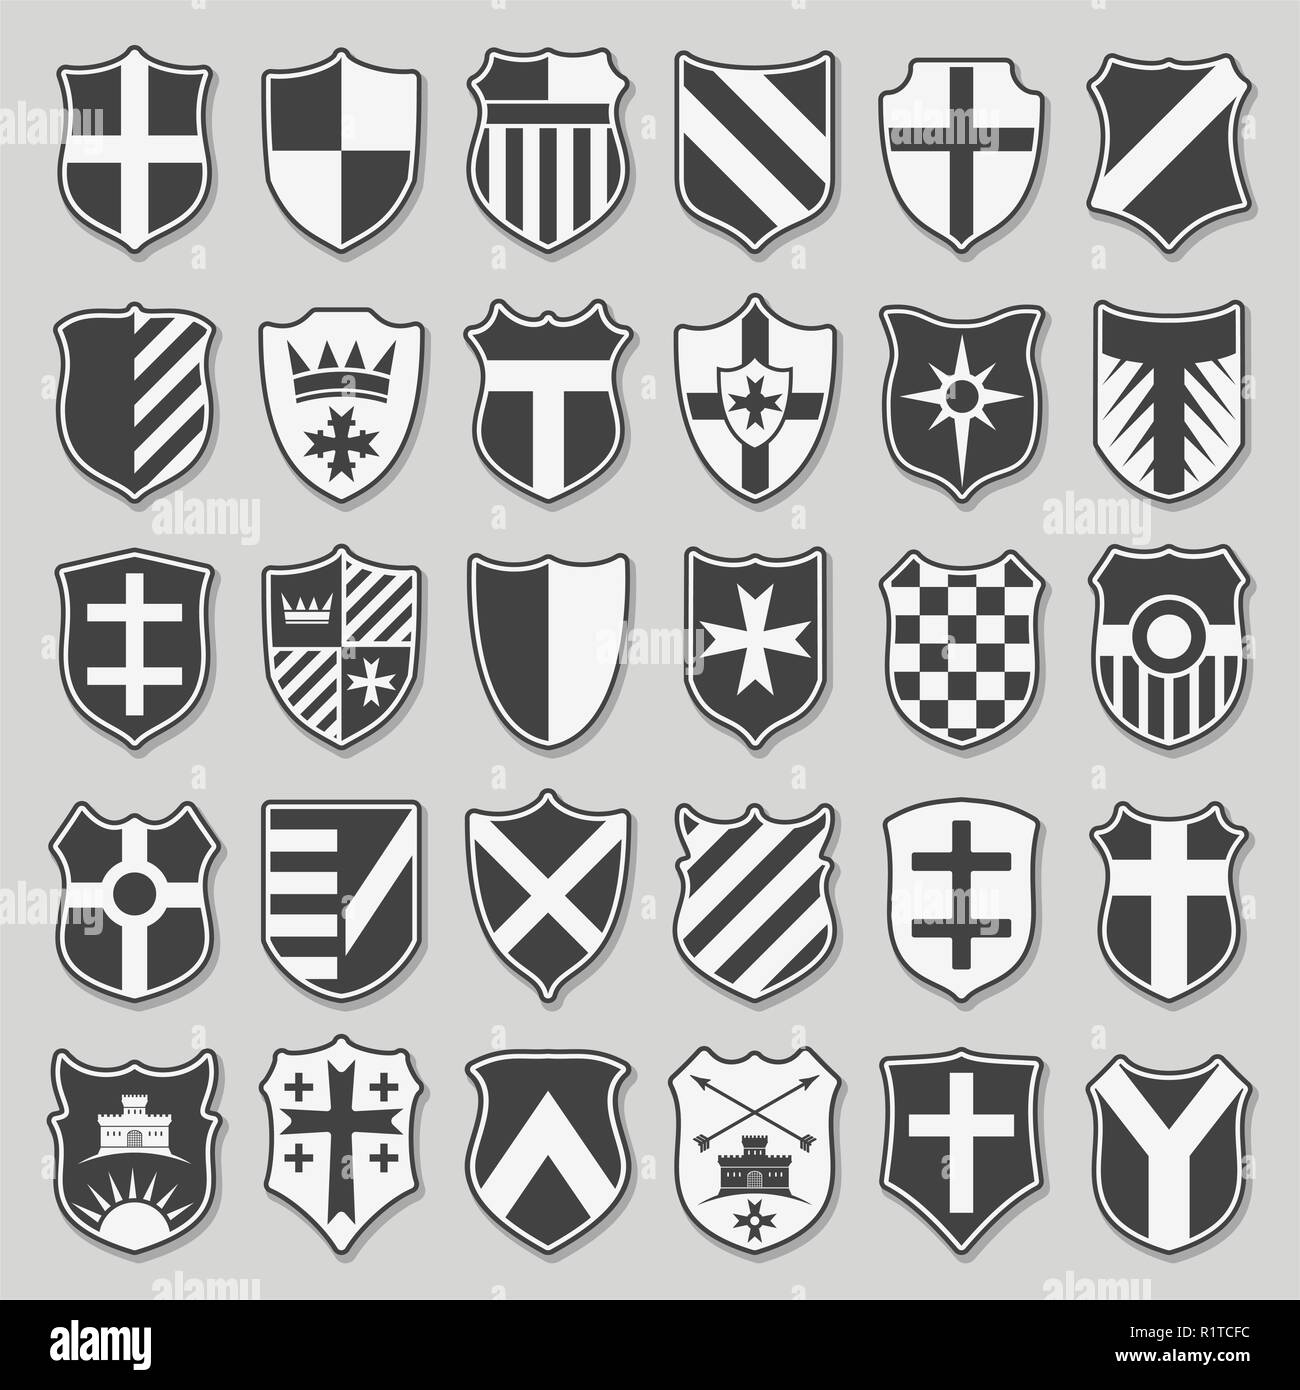 Set of heraldic shields Stock Vector